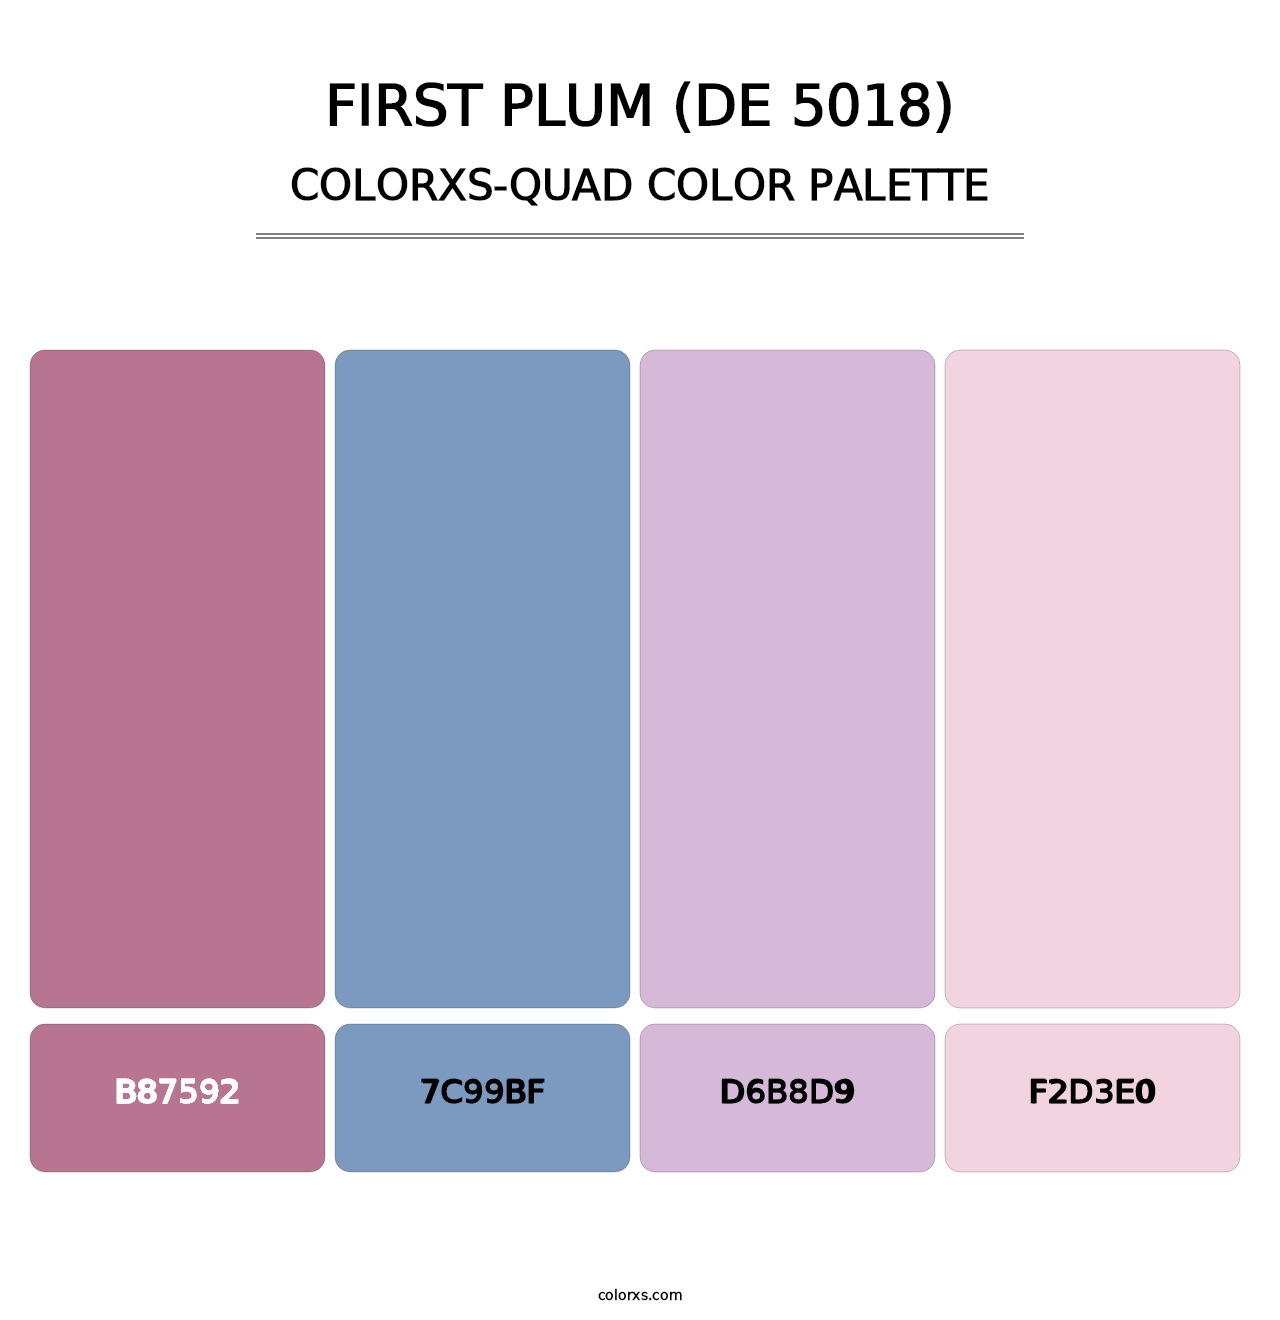 First Plum (DE 5018) - Colorxs Quad Palette